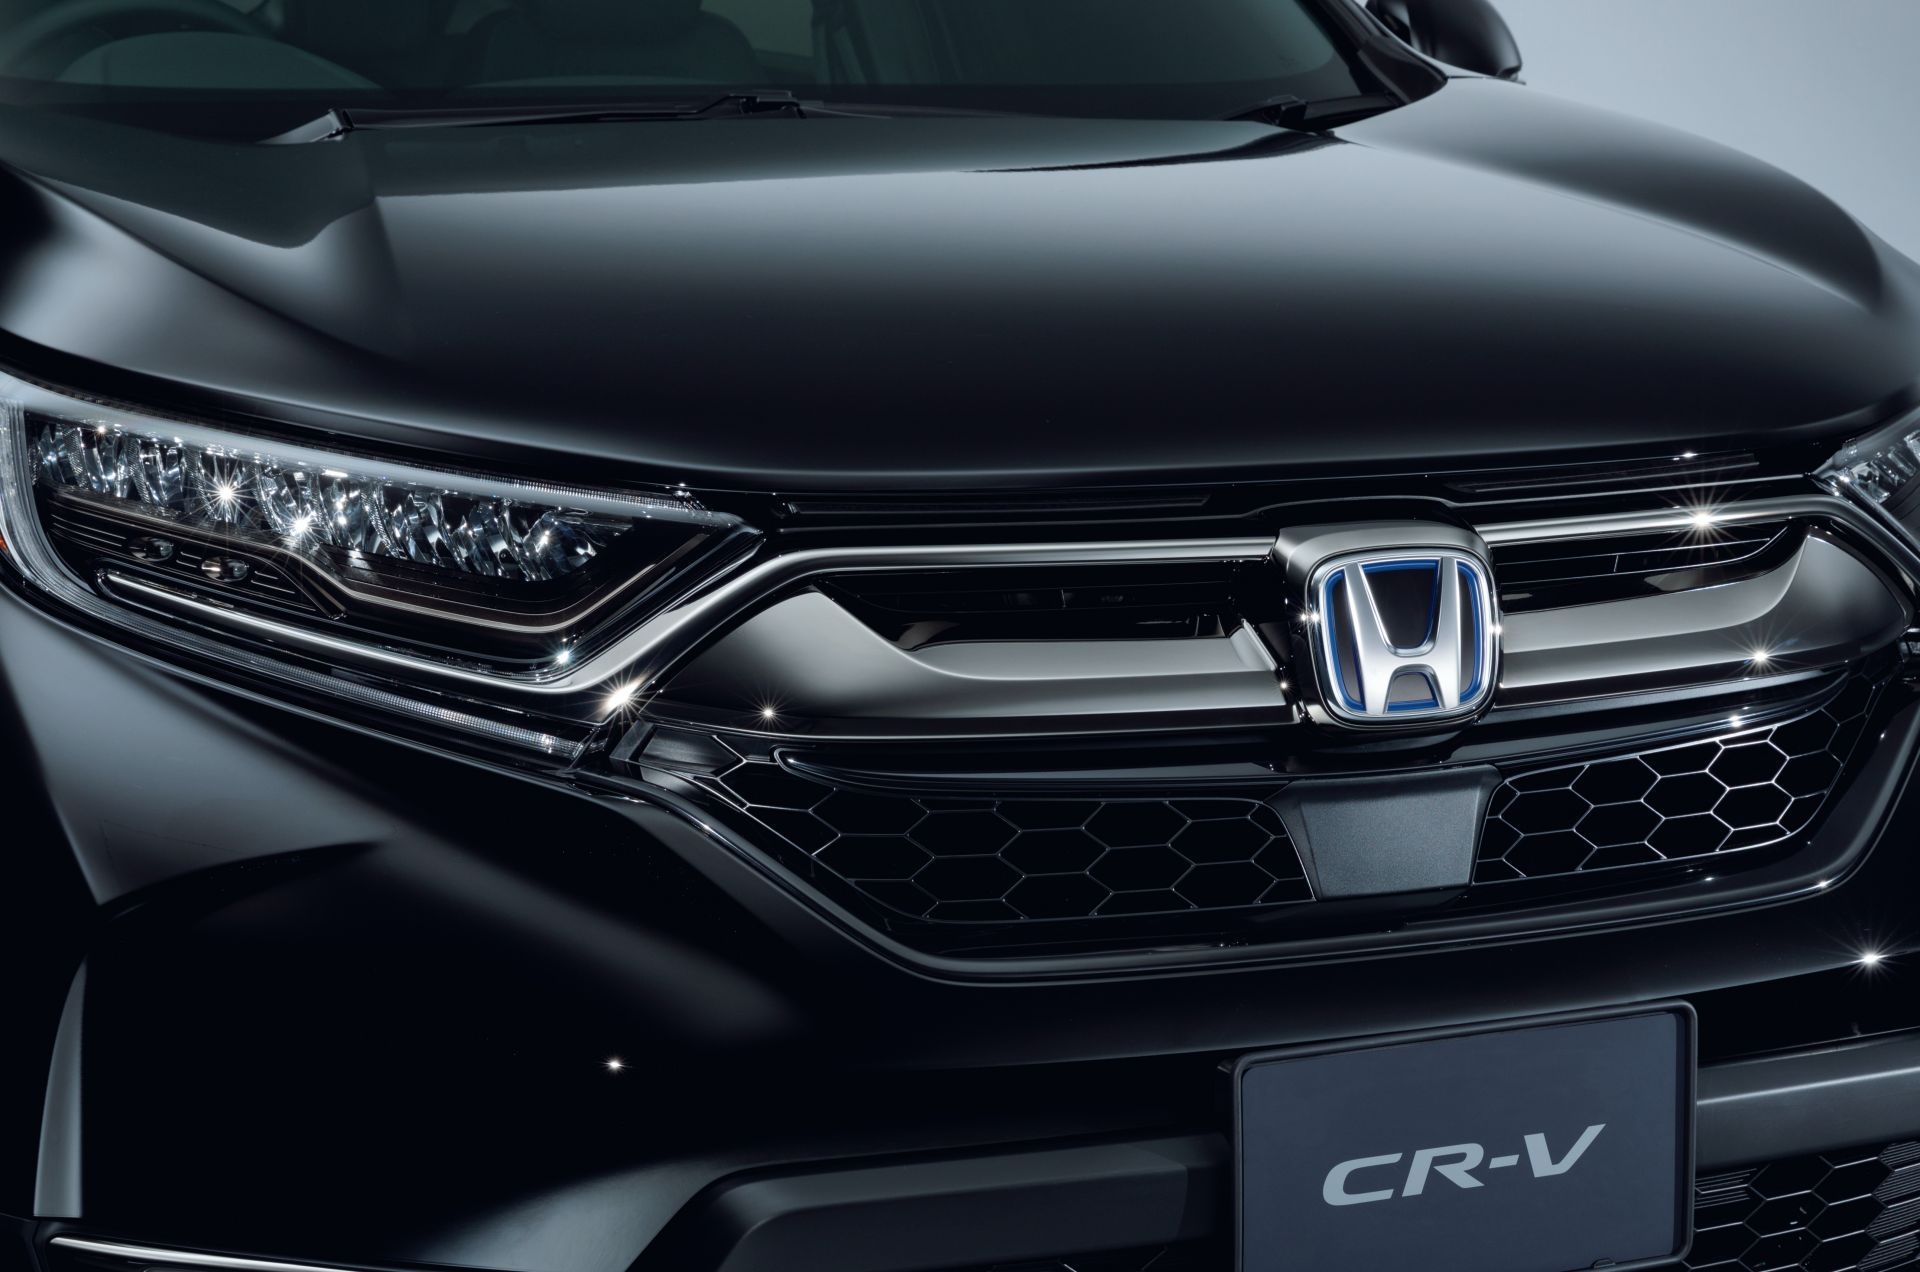 ดำสนิทสุดคมเข้ม! Honda CR-V Black Edition รถใหม่รุ่นพิเศษเปิดตัวที่ญี่ปุ่น